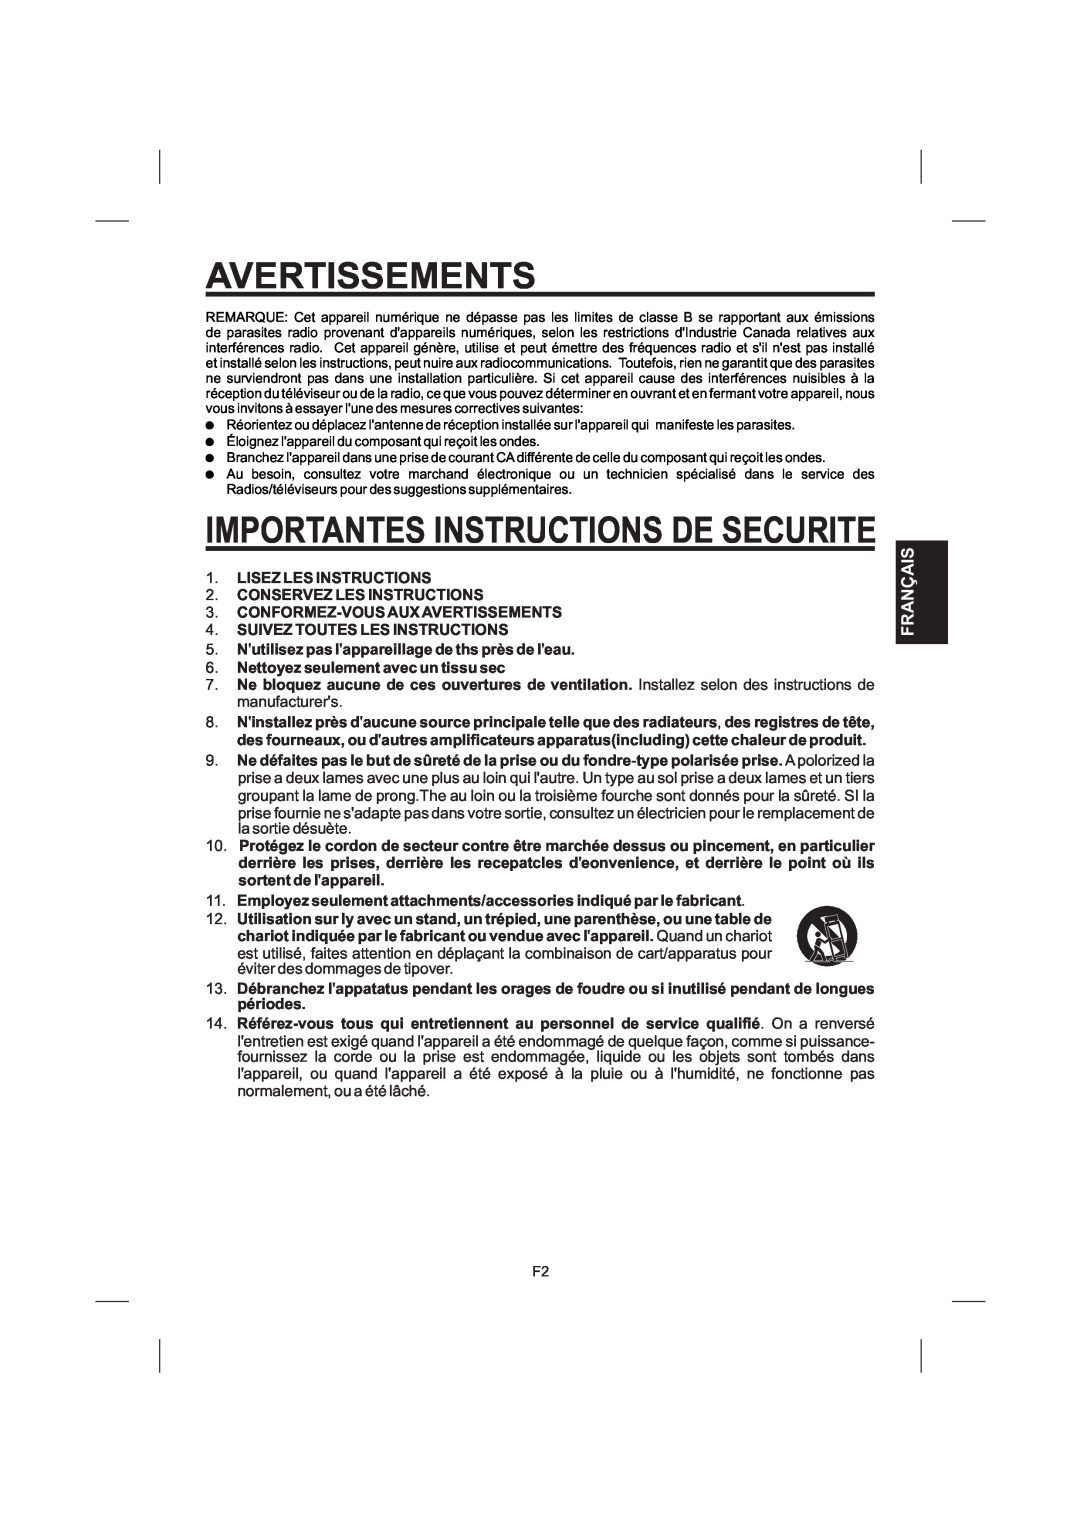 The Singing Machine STVG-559 manual Avertissements, Importantes Instructions De Securite, Français 